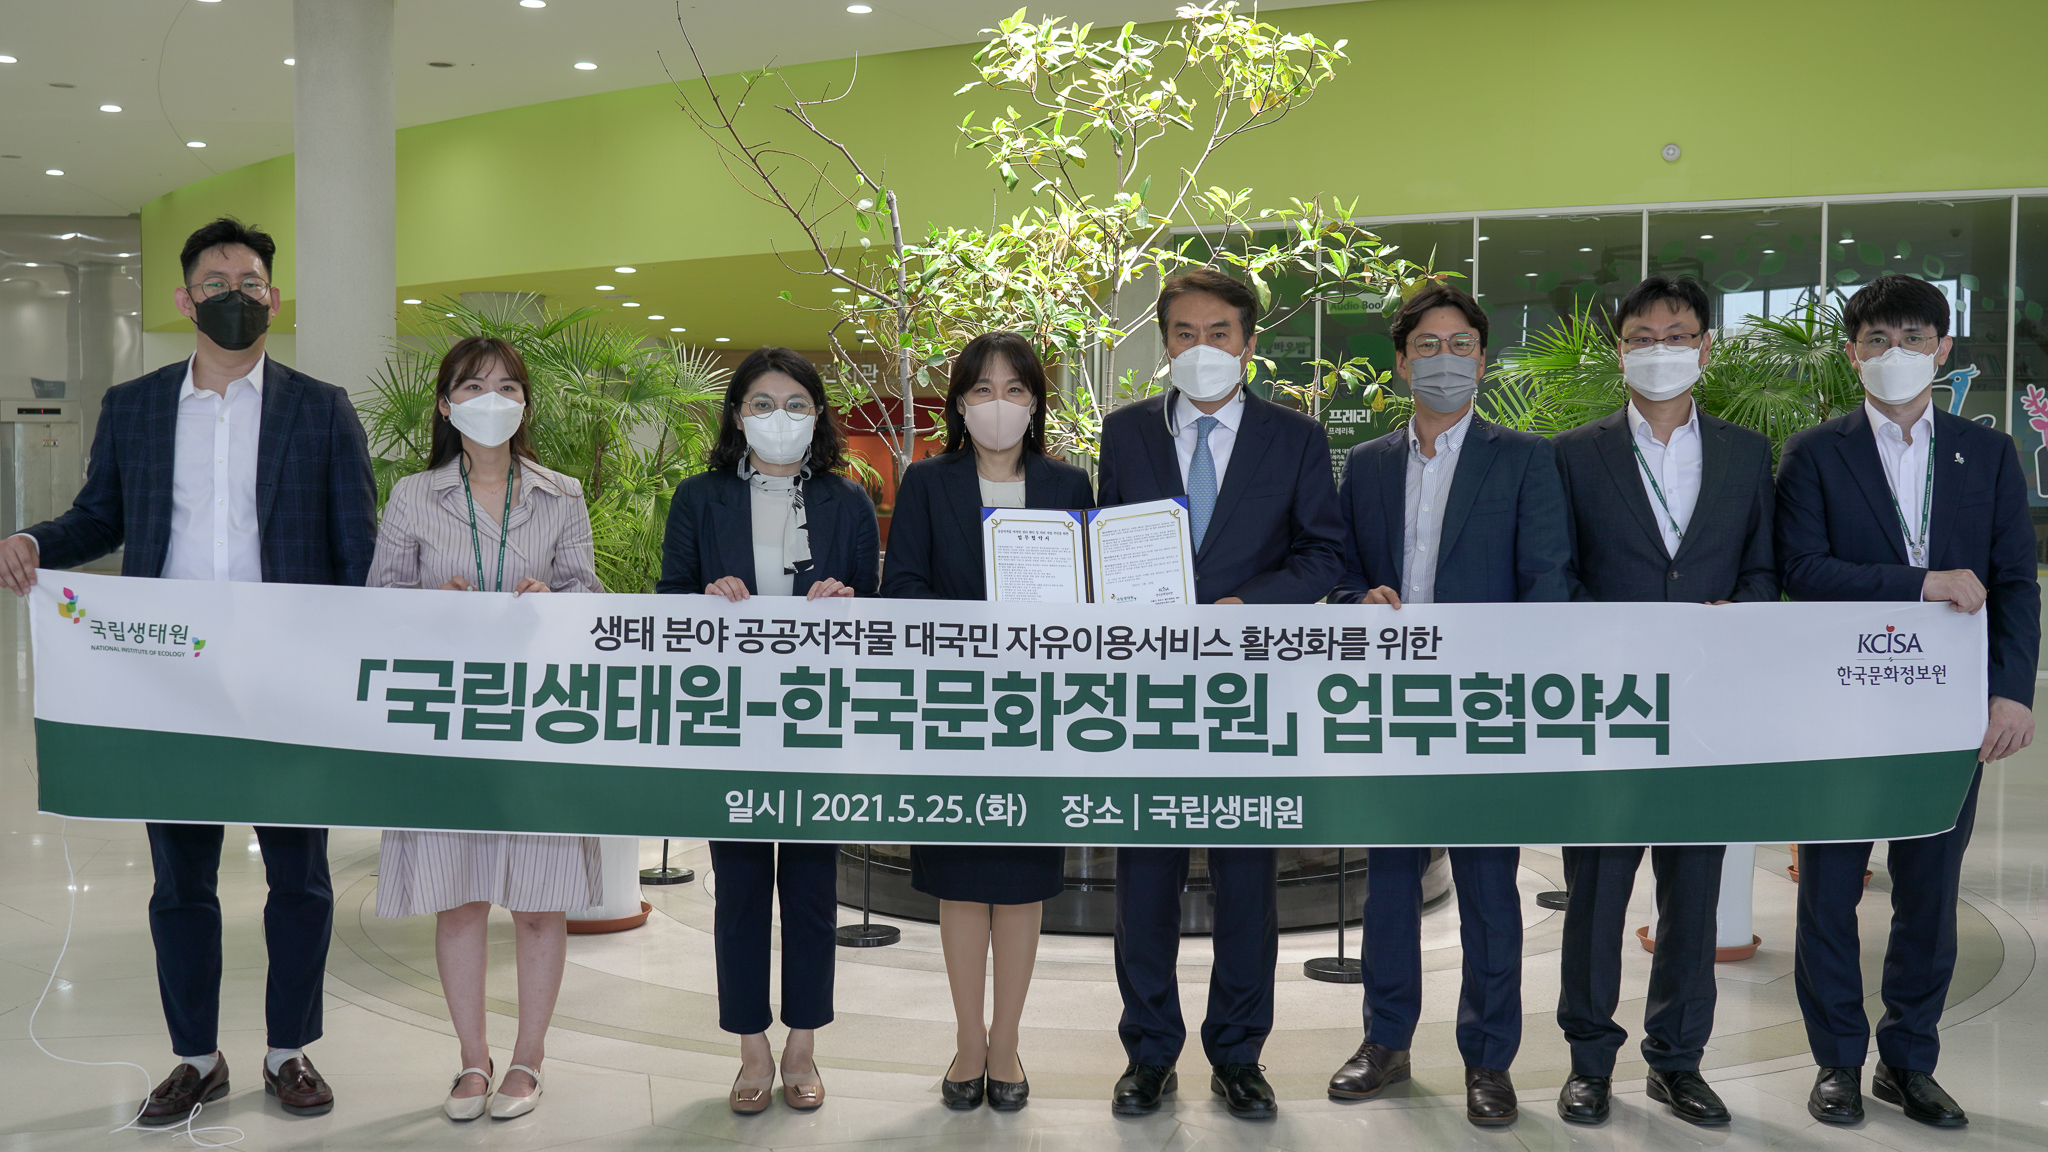 생태분야 공공저작물 대국민 자유이용서비스 활성화를 위한 국립생태원-한국문화정보원 업무협약식 일시 2021.5.25(화) 장소 국립생태원 단체사진2